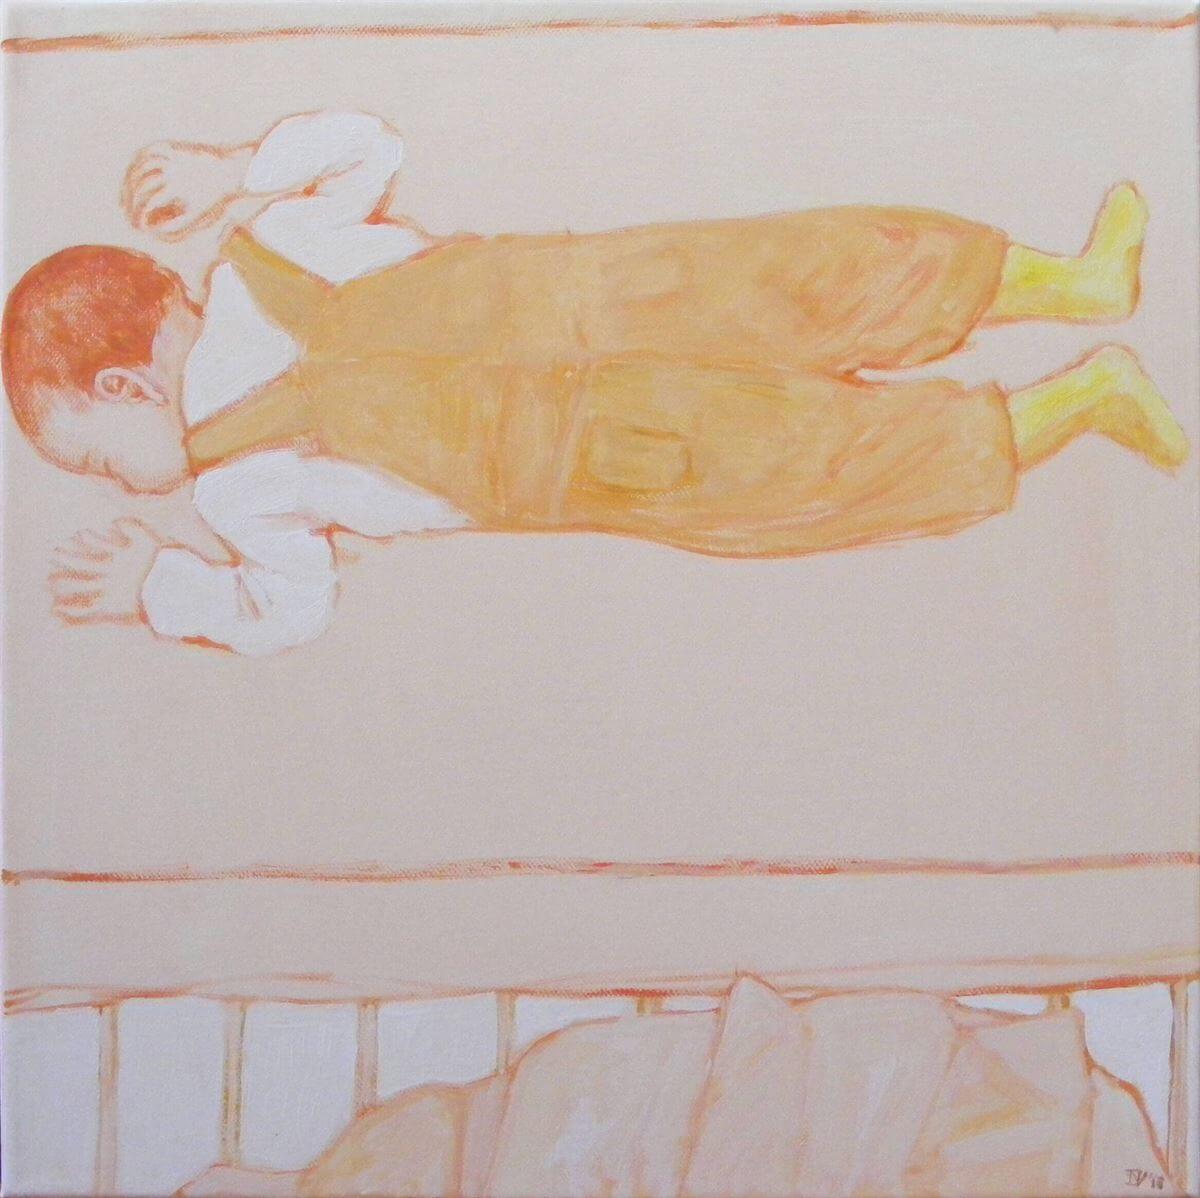 Amíg alszik – Jakatics-Szabó Veronika Amíg alszik című festménysorozata Botondkáról